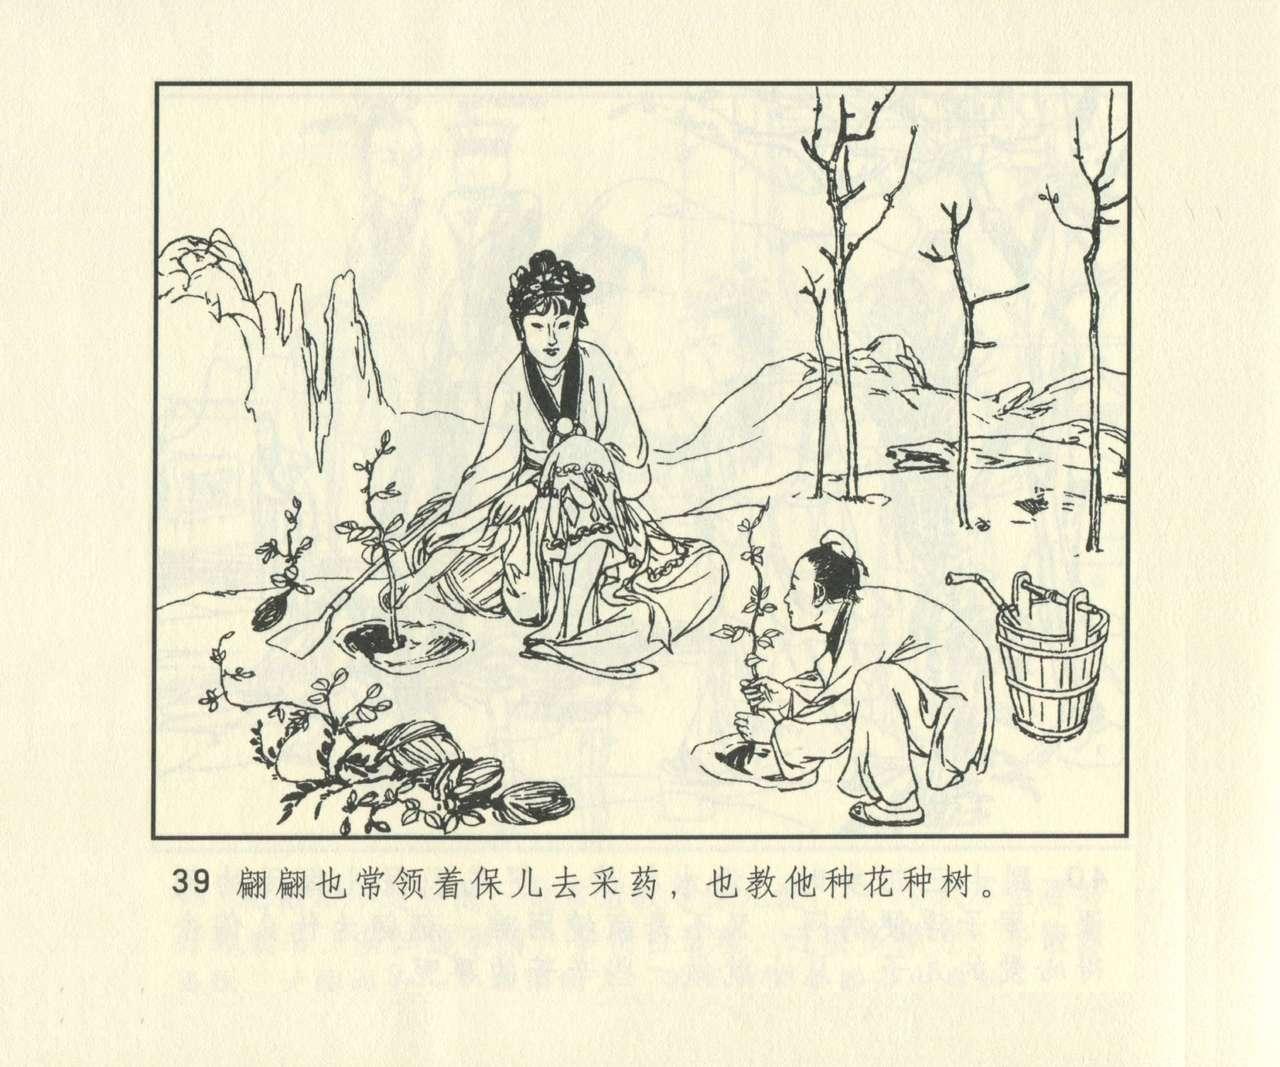 聊斋志异 张玮等绘 天津人民美术出版社 卷二十一 ~ 三十 655